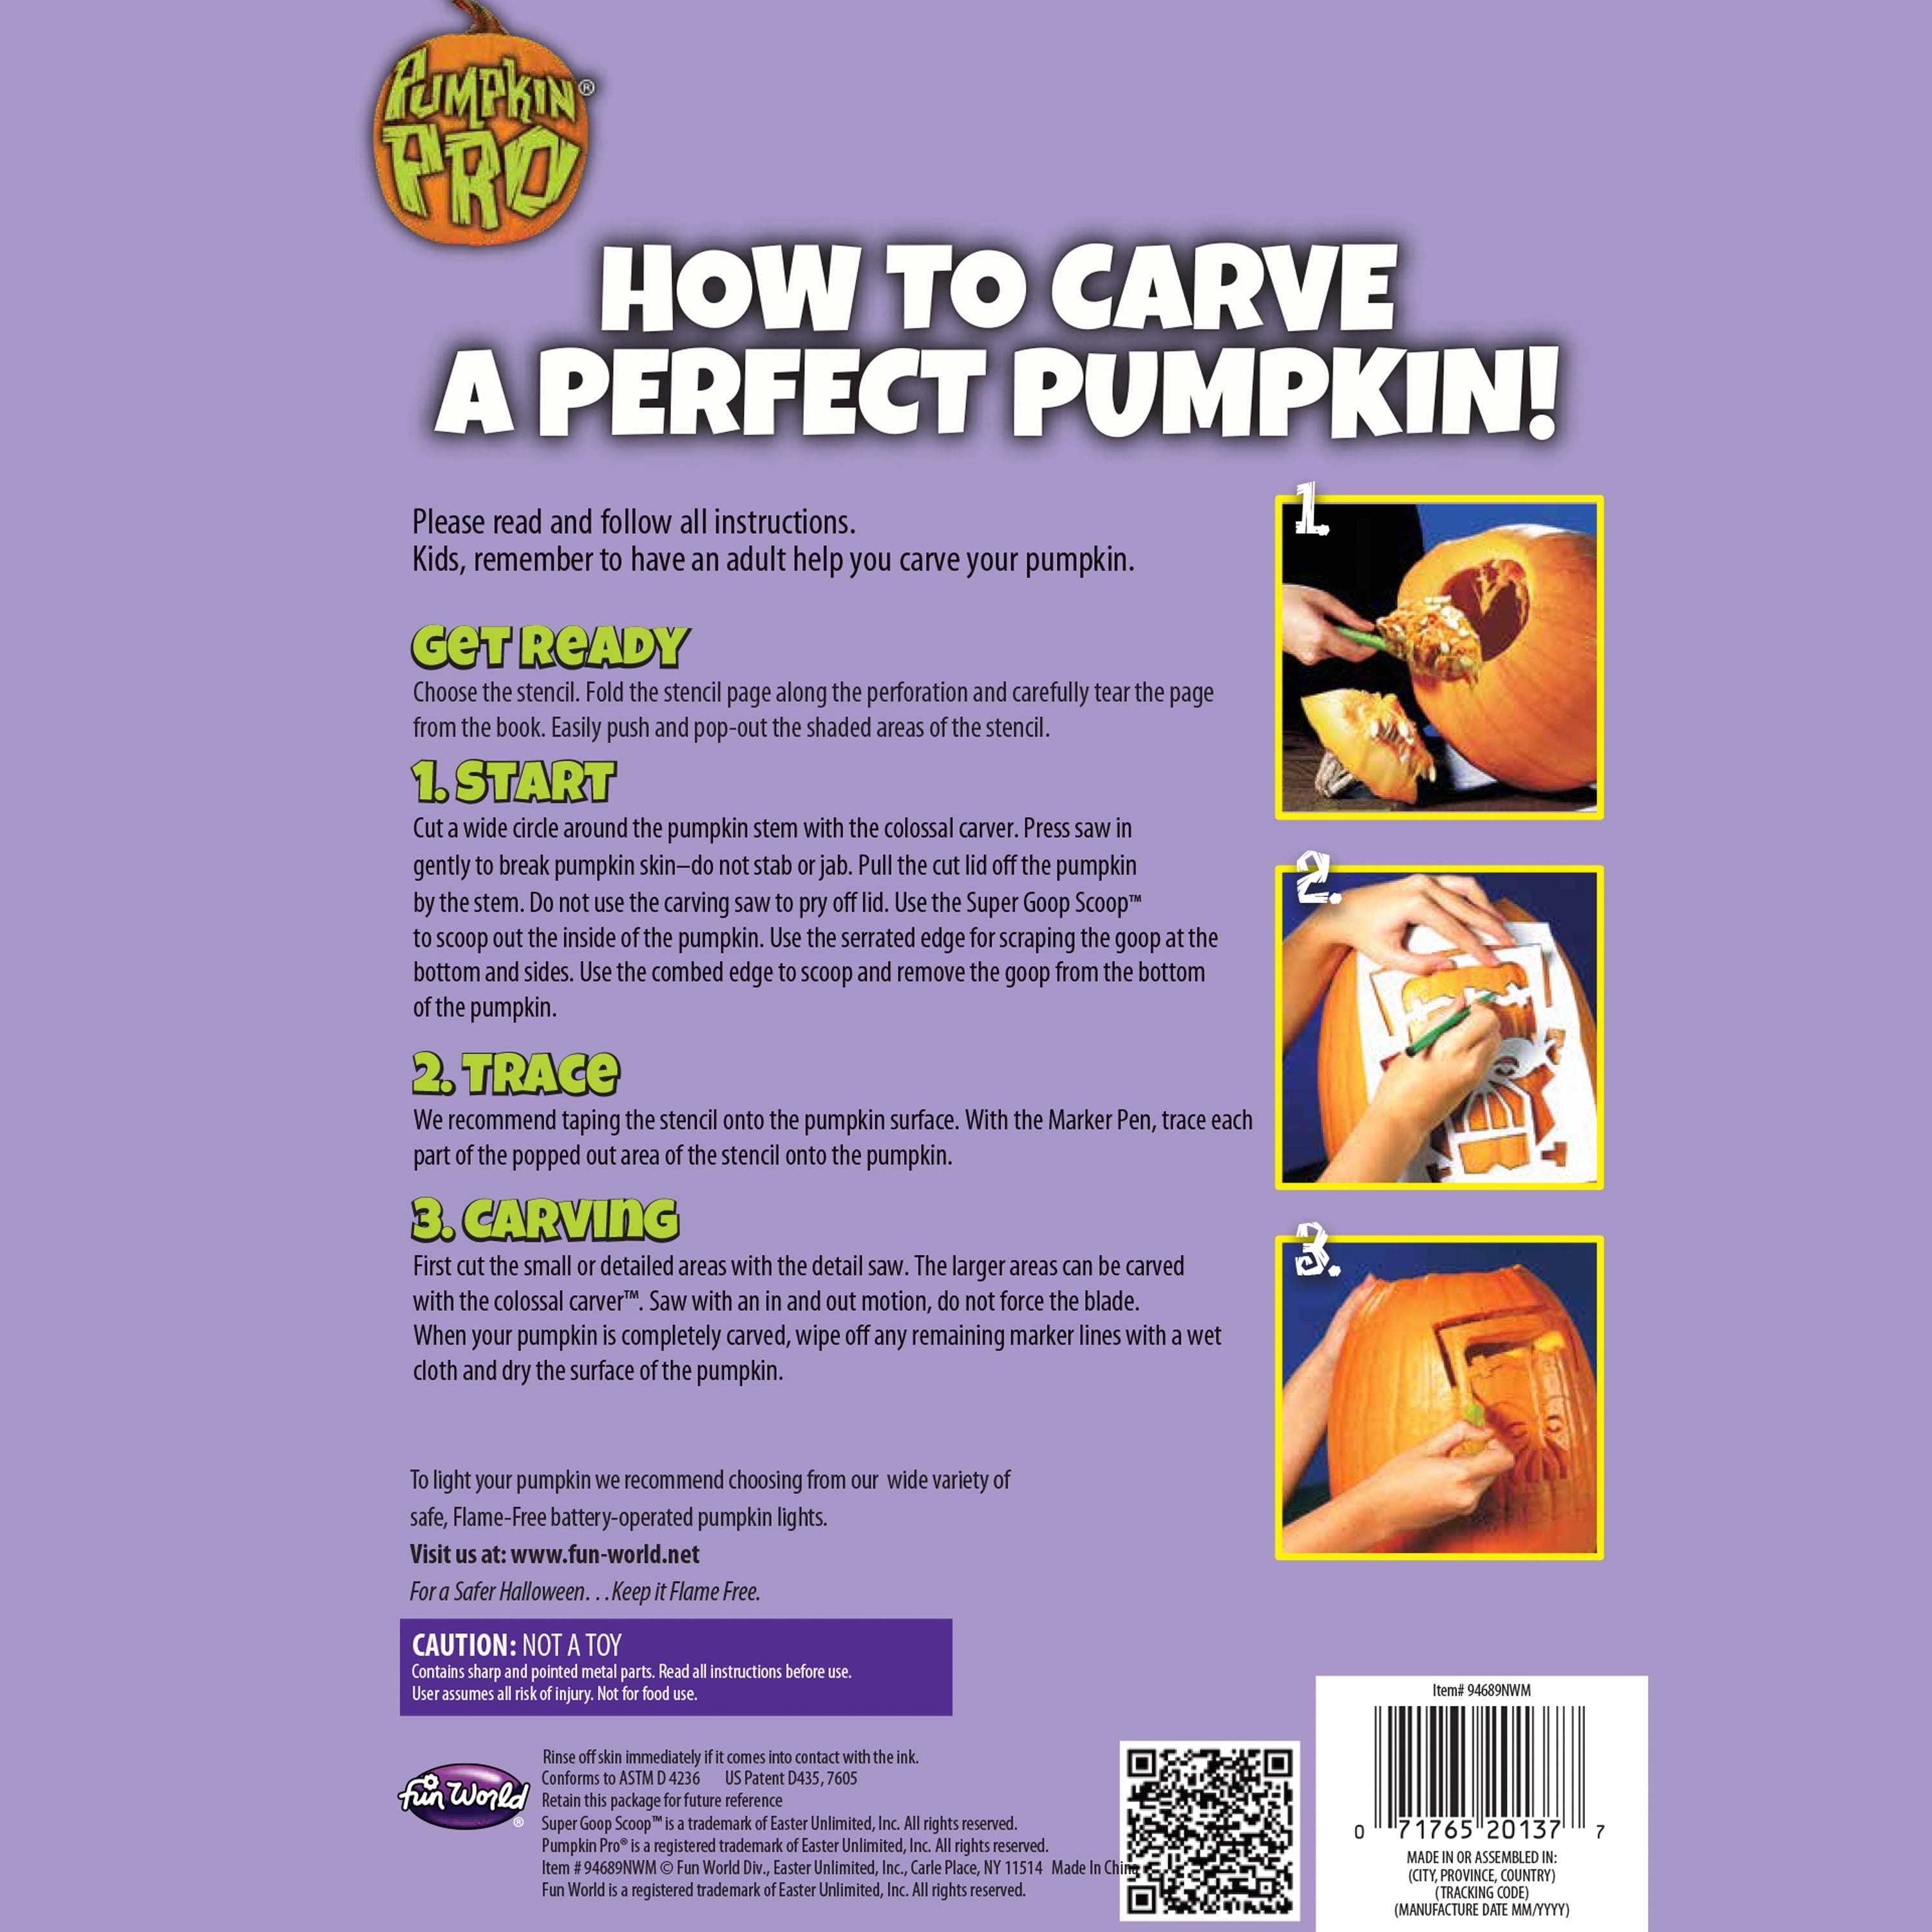 Fun World 10 Piece Pumpkin Carving Kit, 1 each